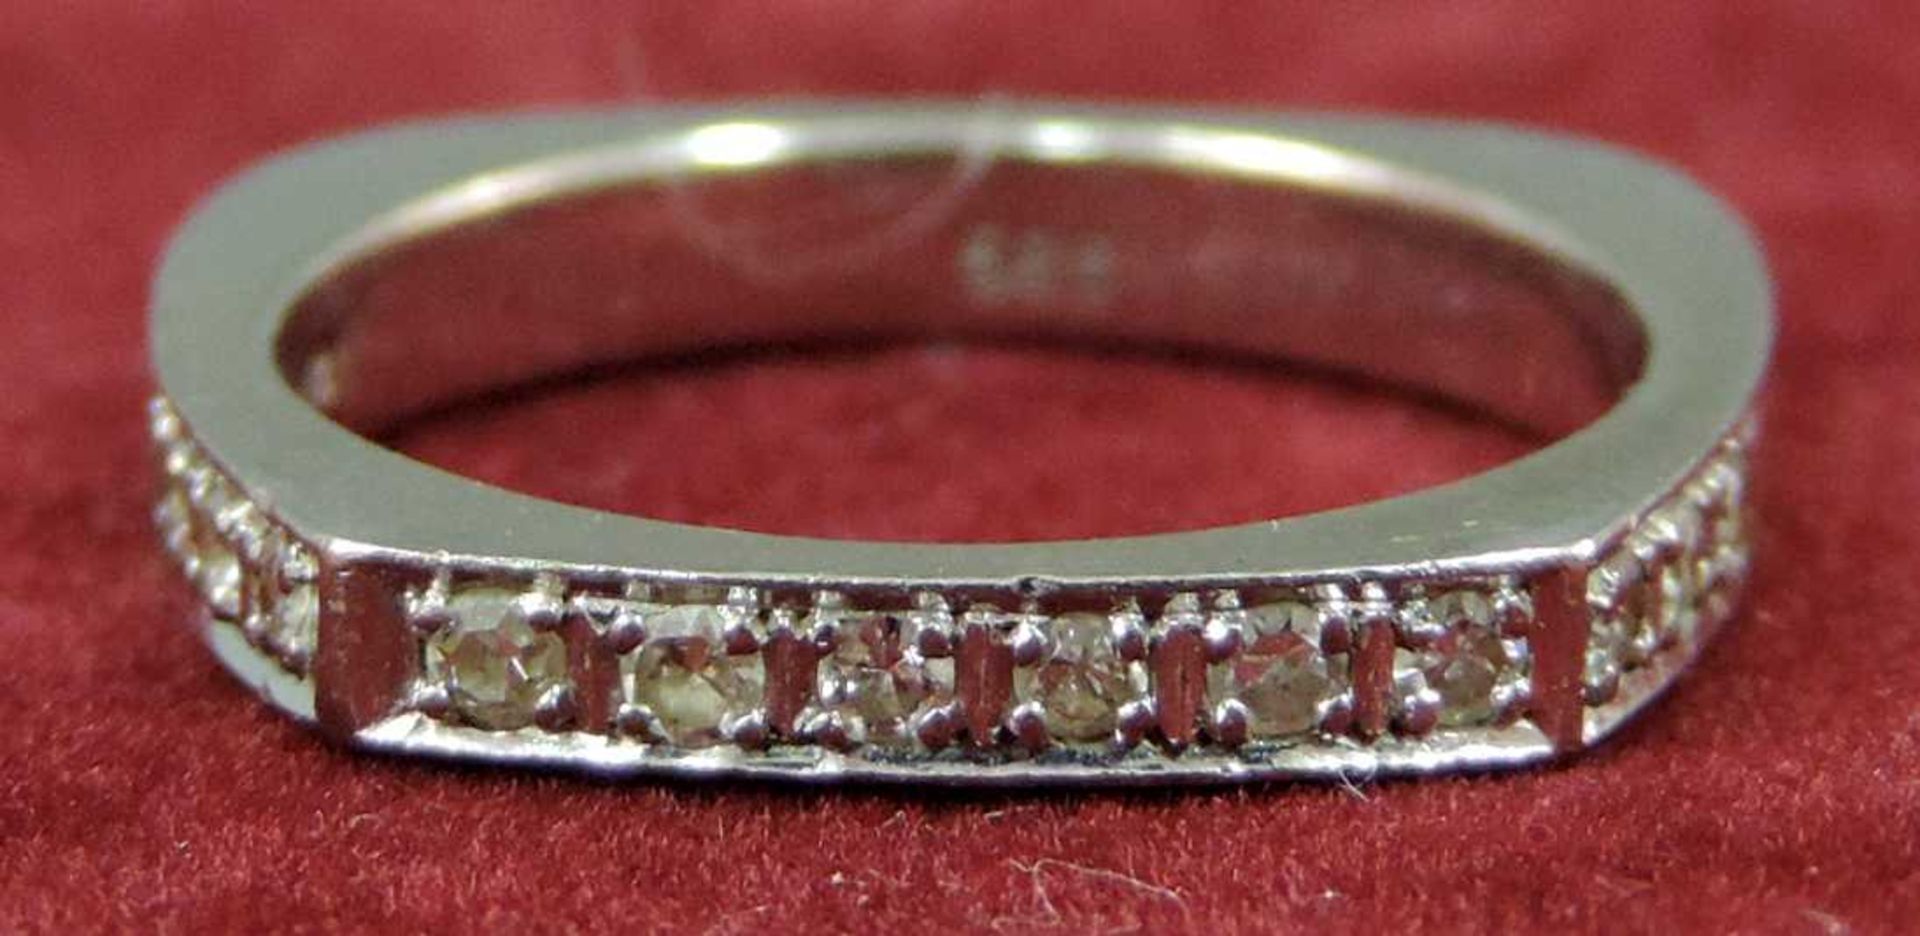 Ring, Weißgold 585, 12 Diamanten. Gesamtgewicht 3,9 Gramm. Ring, white gold 585, 12 diamonds.